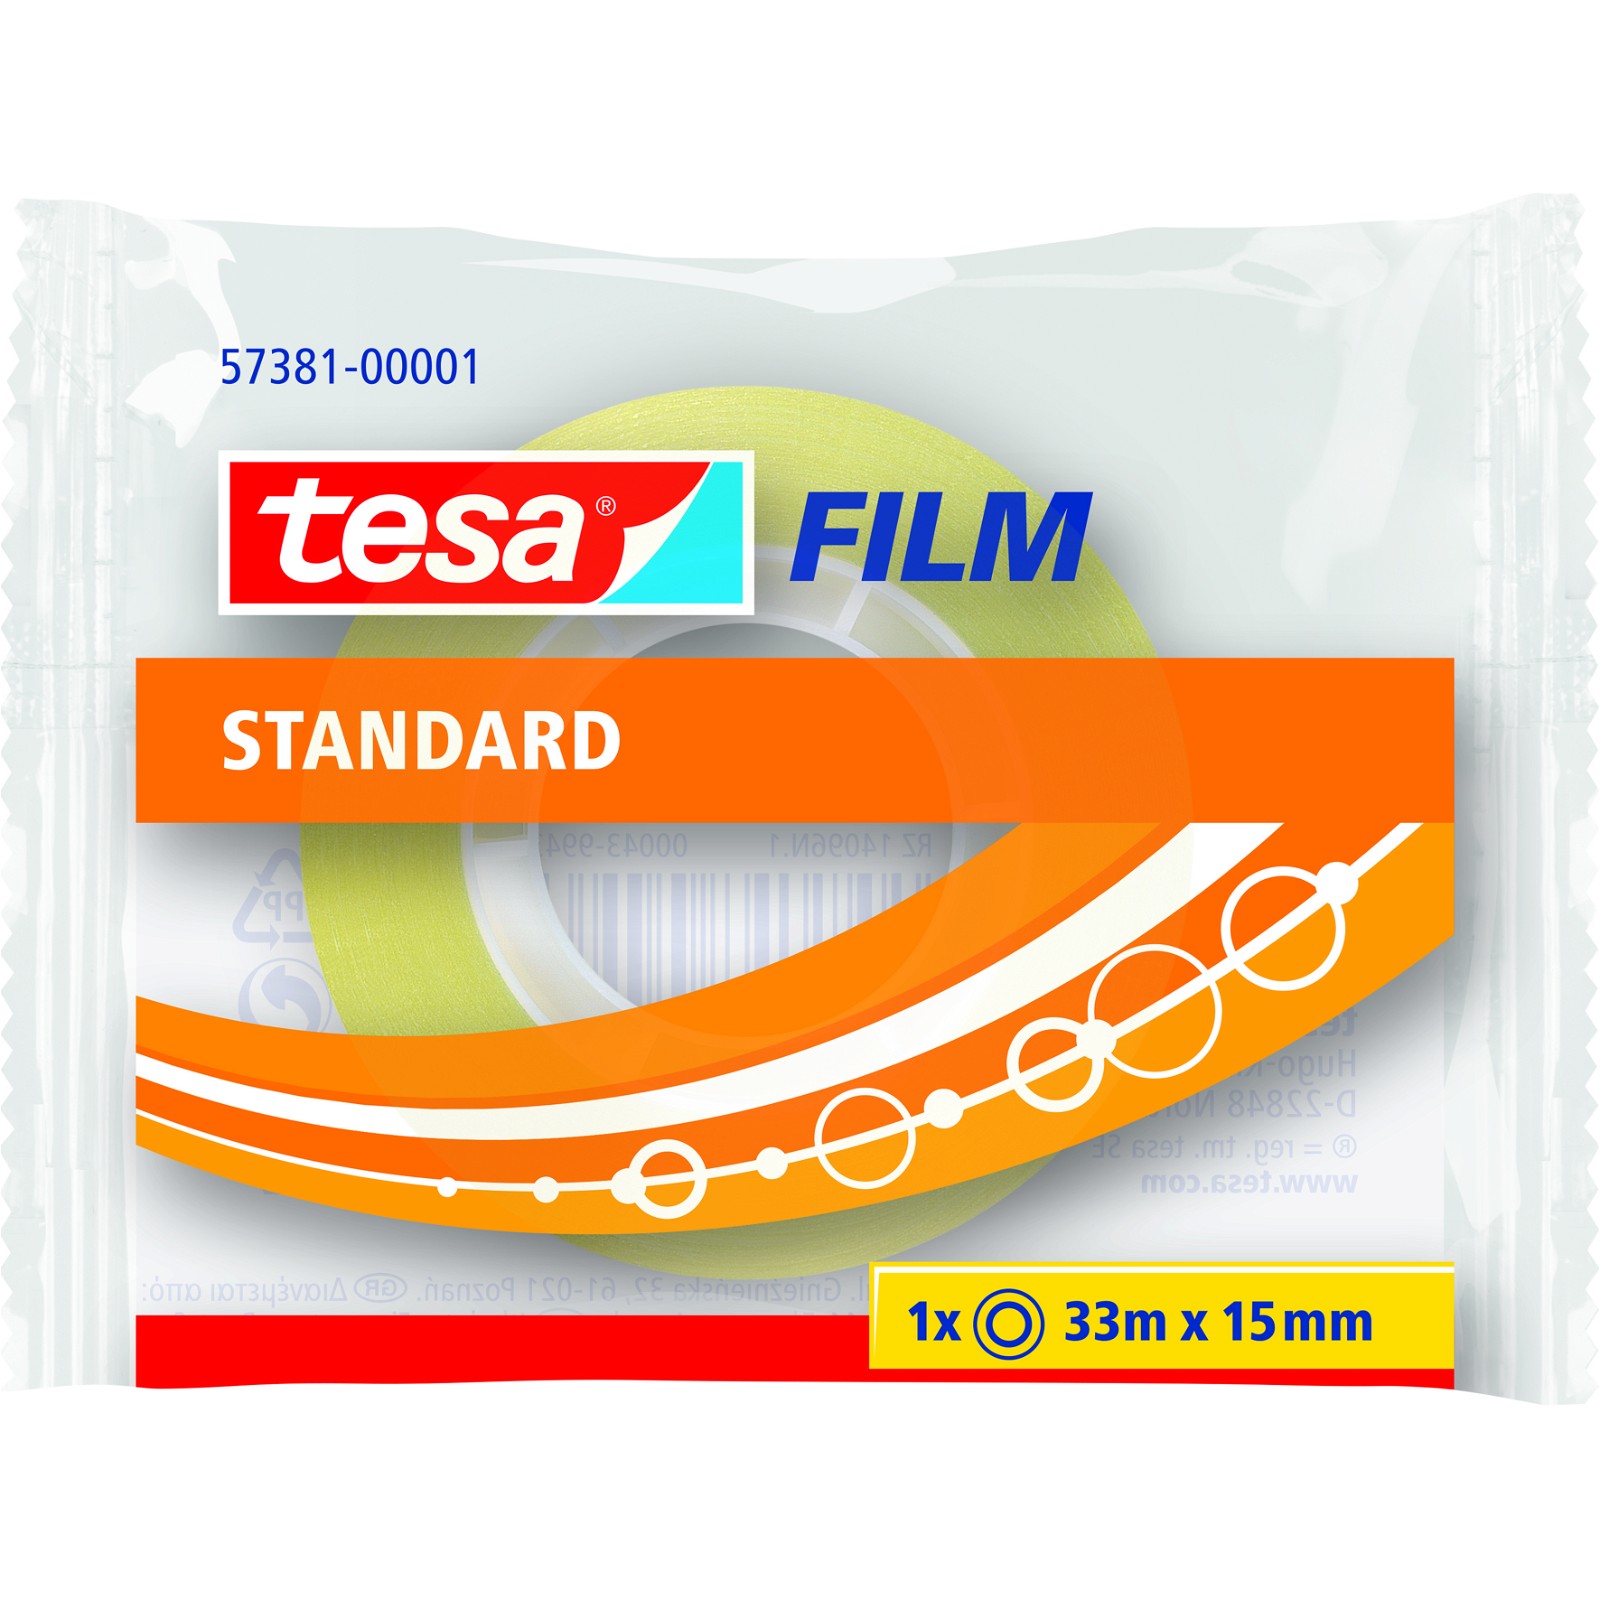 Tesa Film Standard 15mmx33m klar